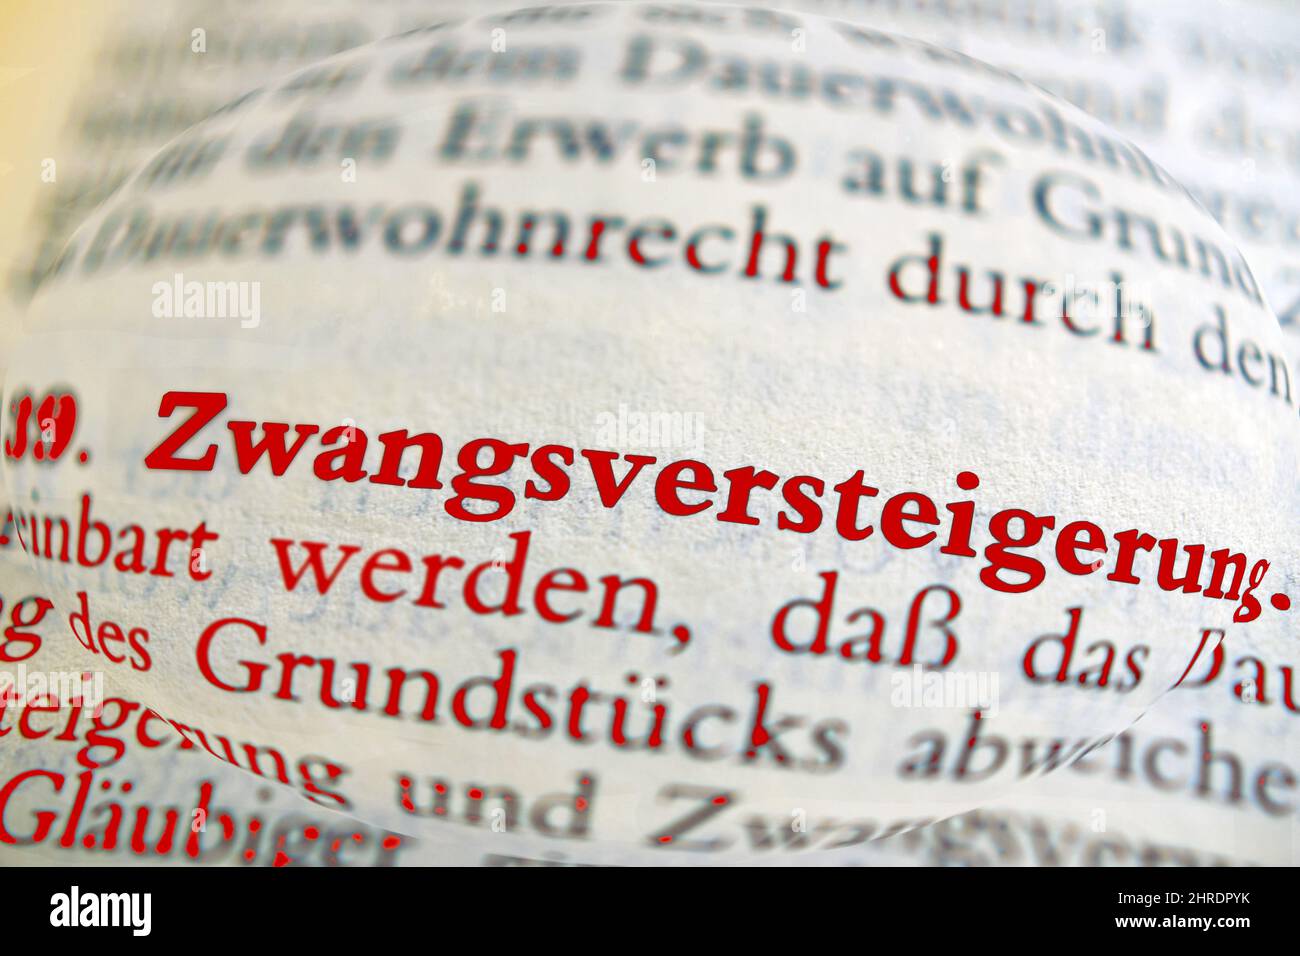 Closeup shot of a German word Zwangsversteigerung in a dictionary Stock Photo